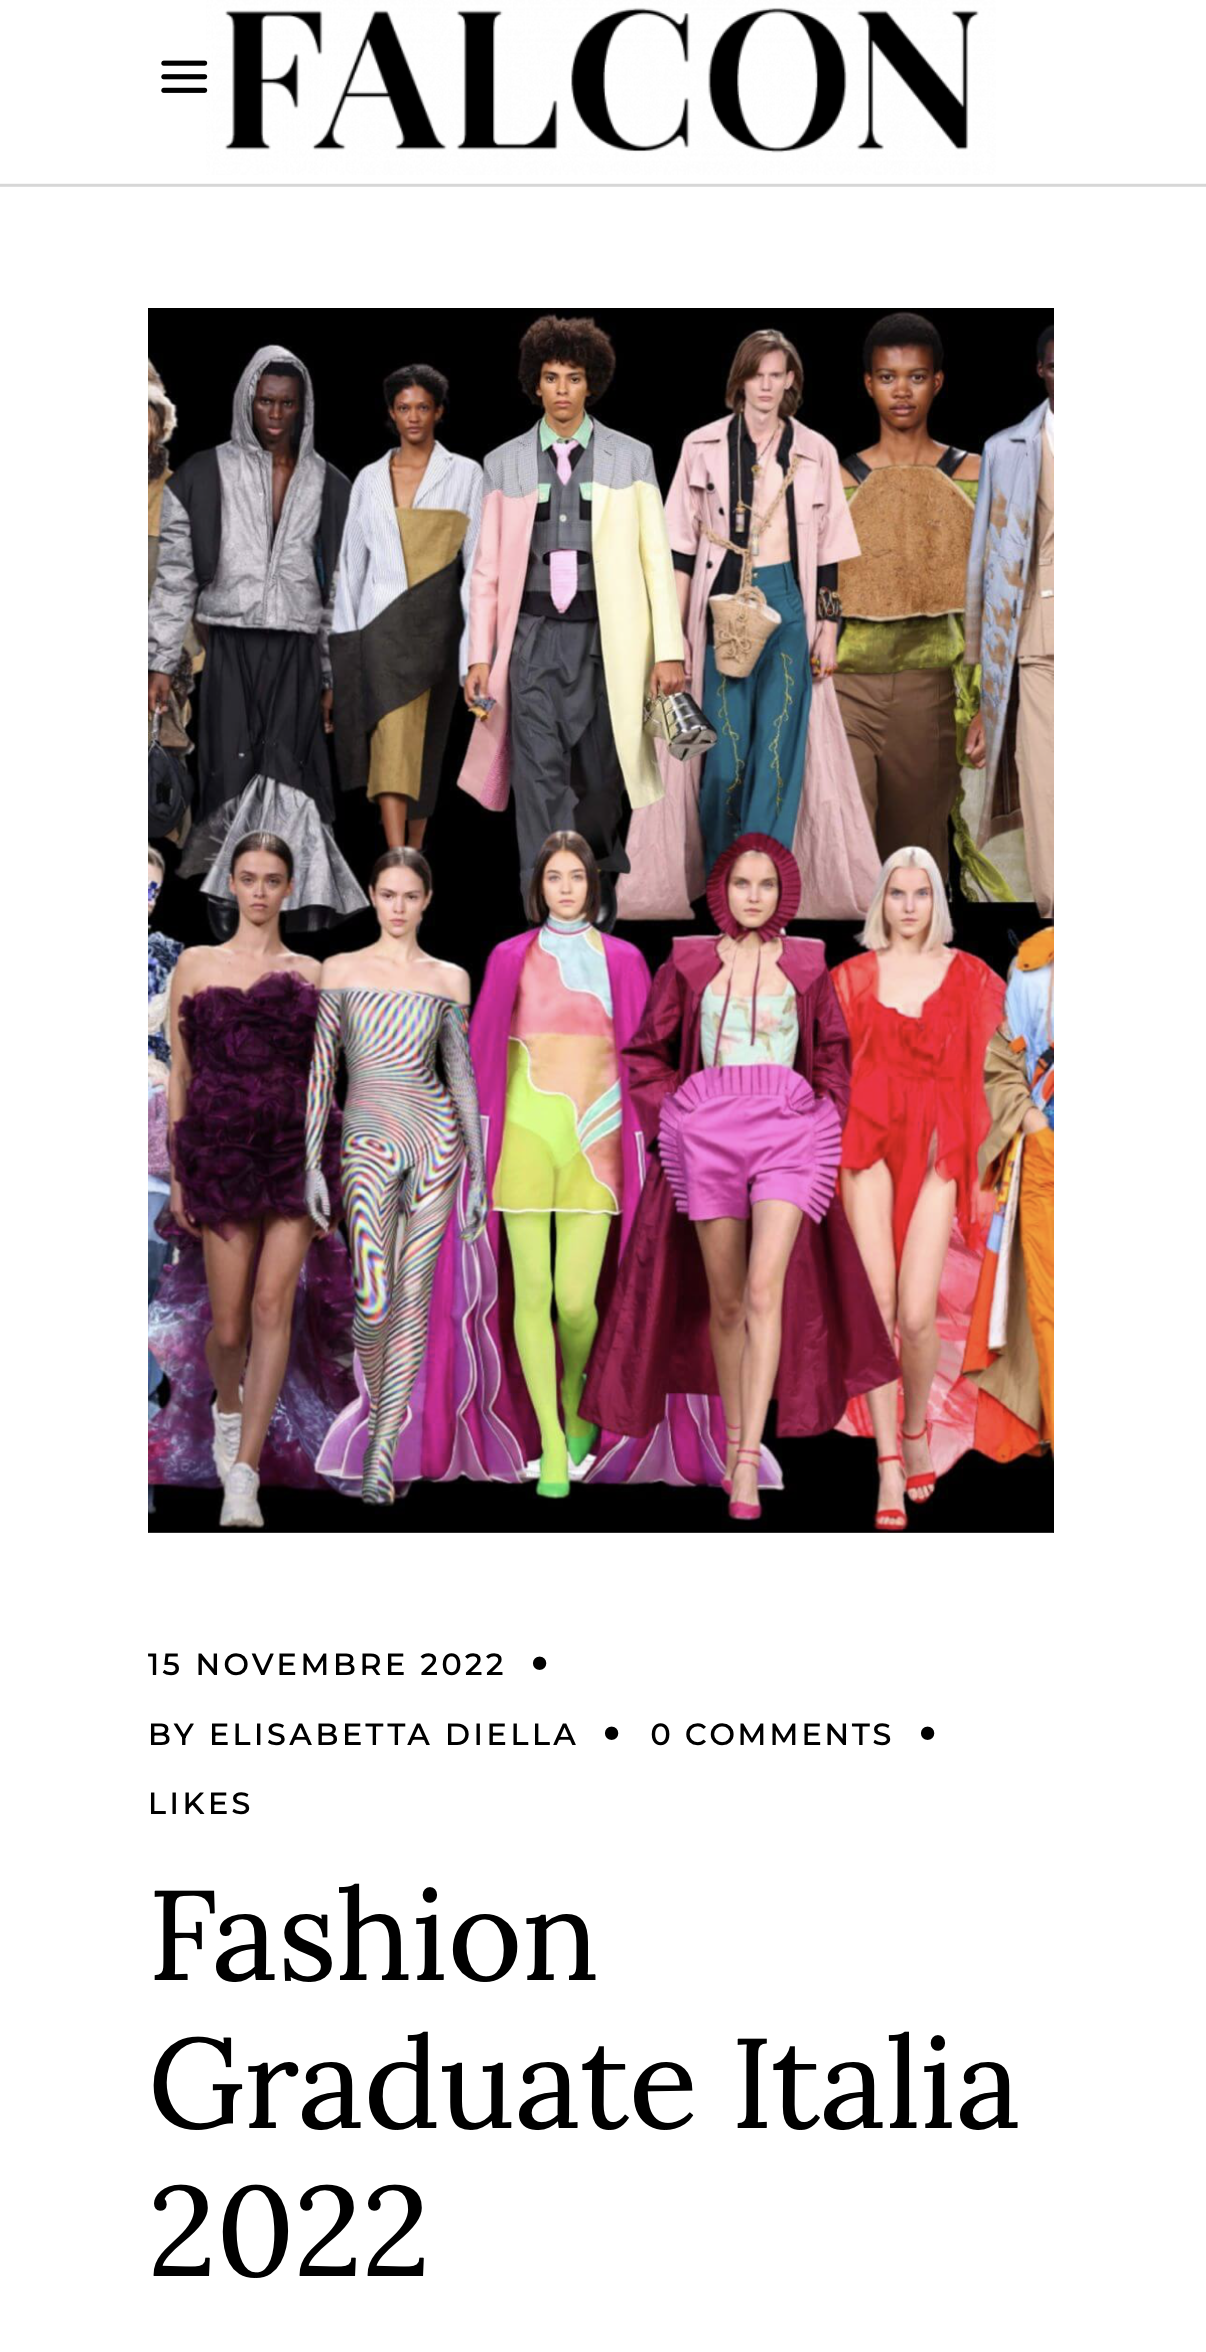 Fashion Graduate Italia 2022-Falcon Magazine